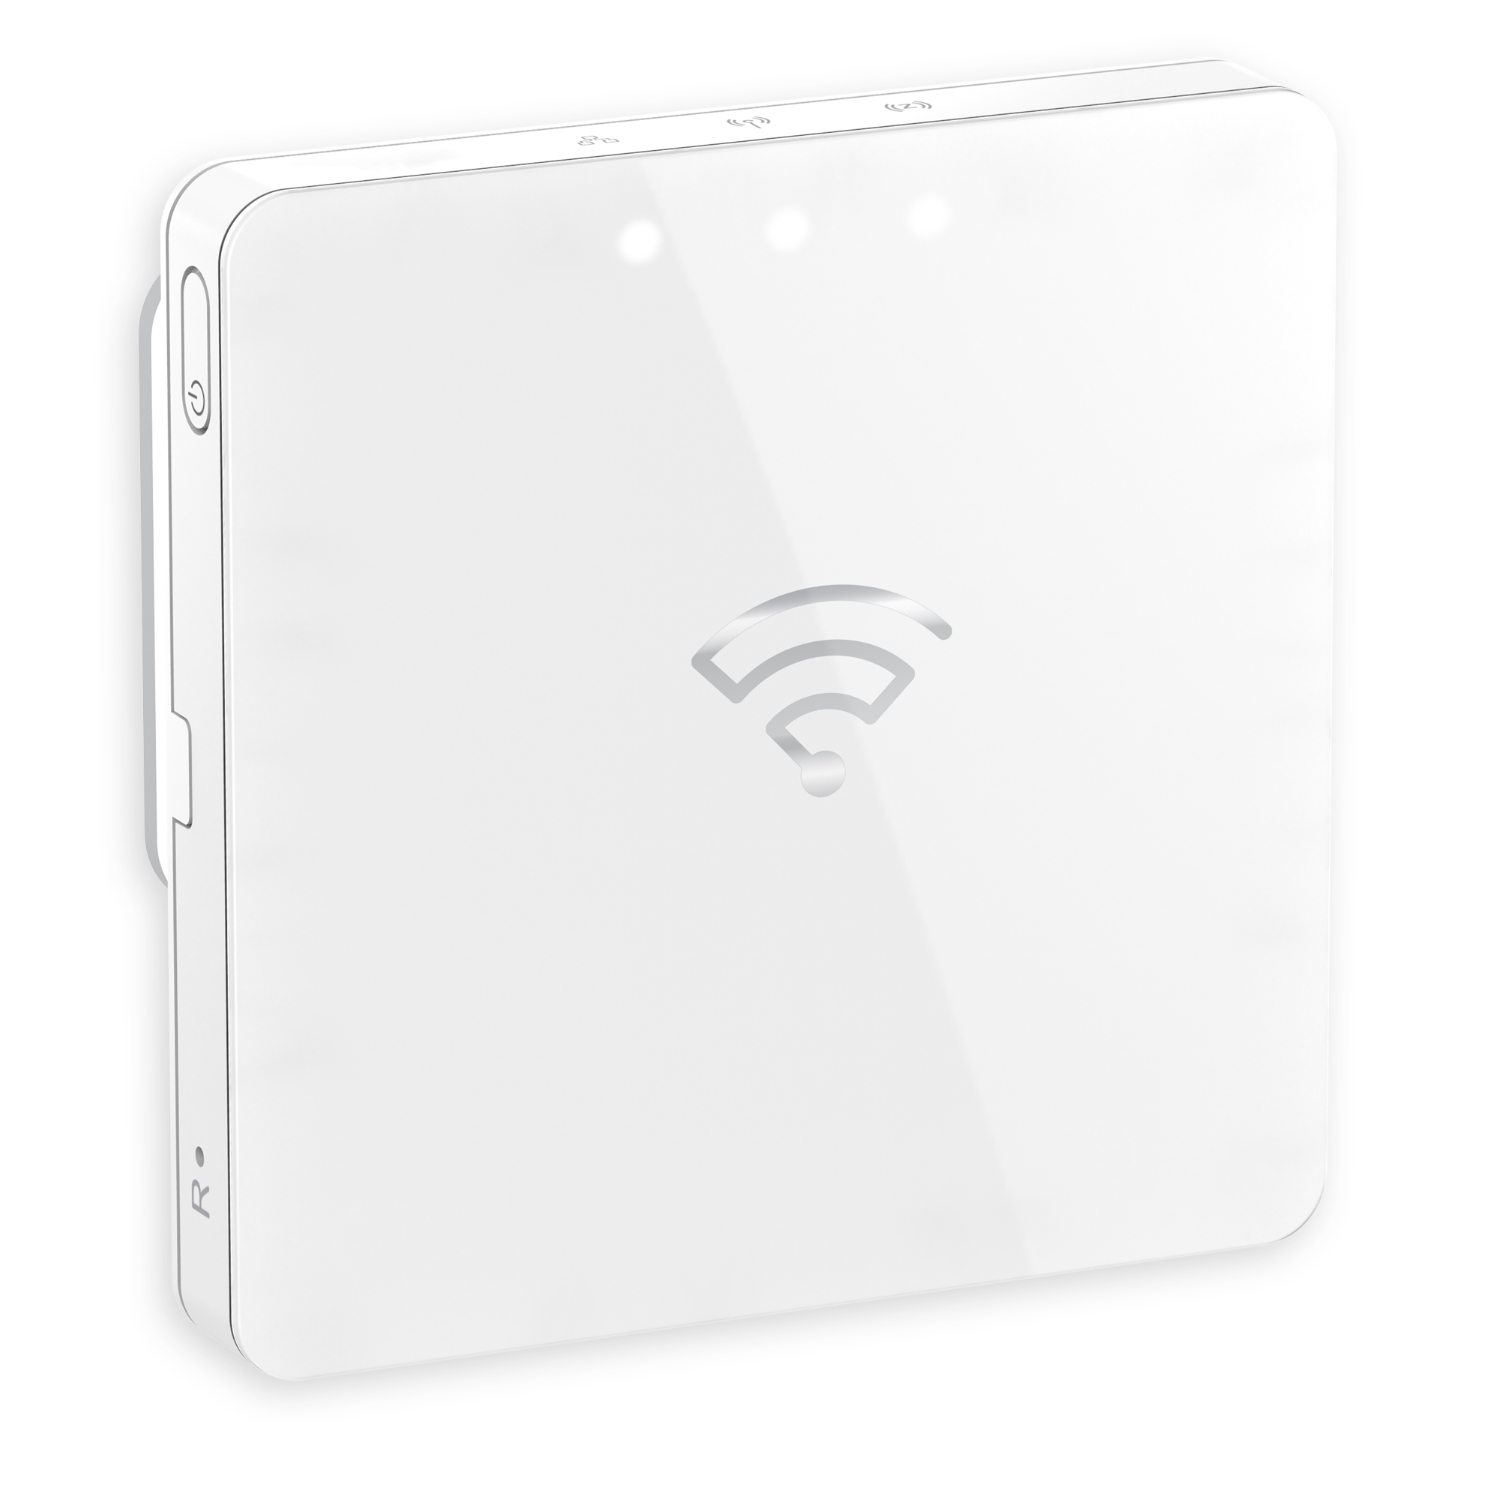 PDL Wiser - Smart Hub Zigbee to IP Network 100-240 V AC IP20 - White